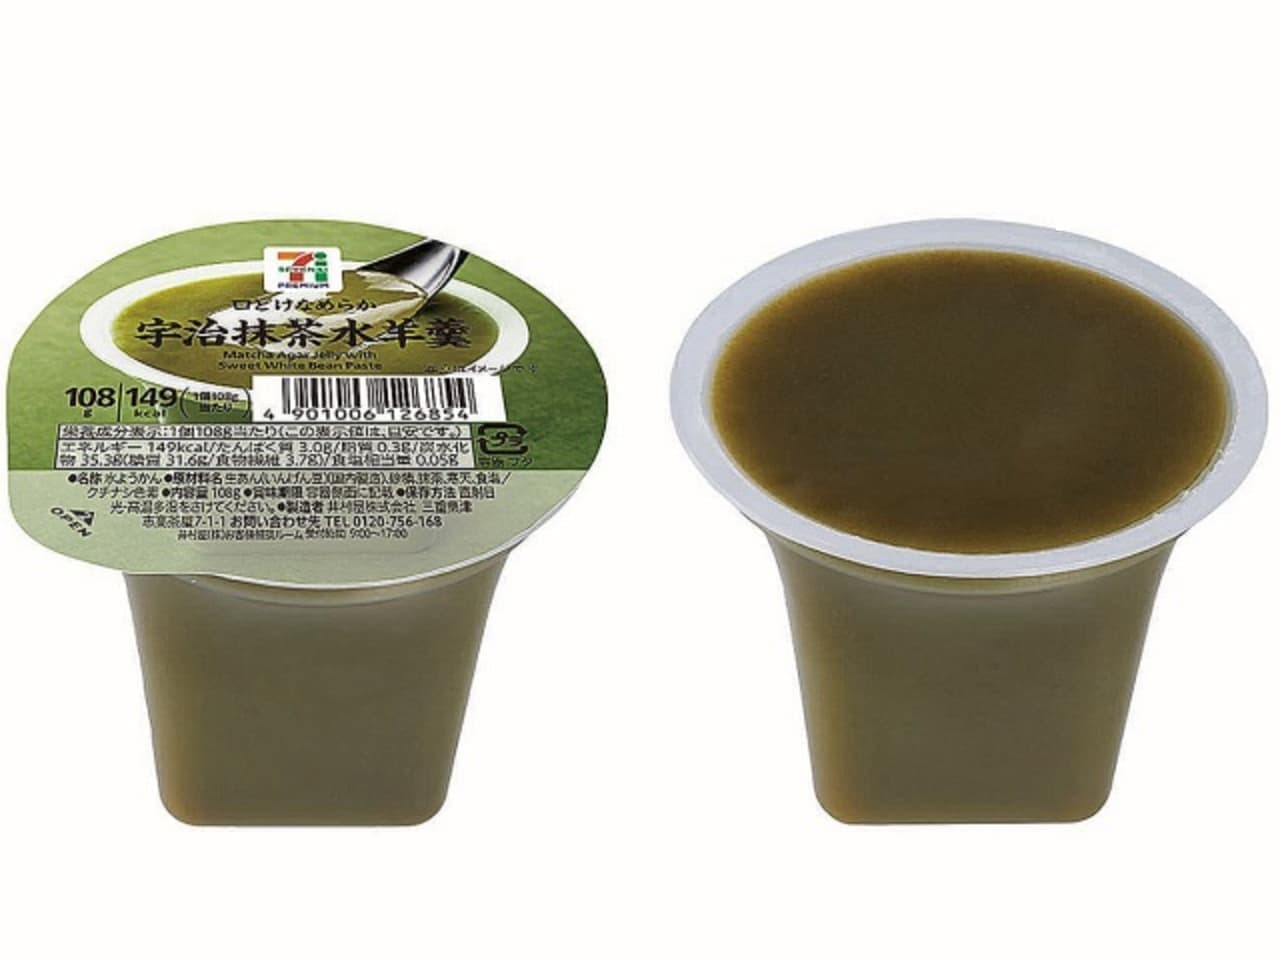 7-ELEVEN "7 Premium Uji green tea mizuyokan